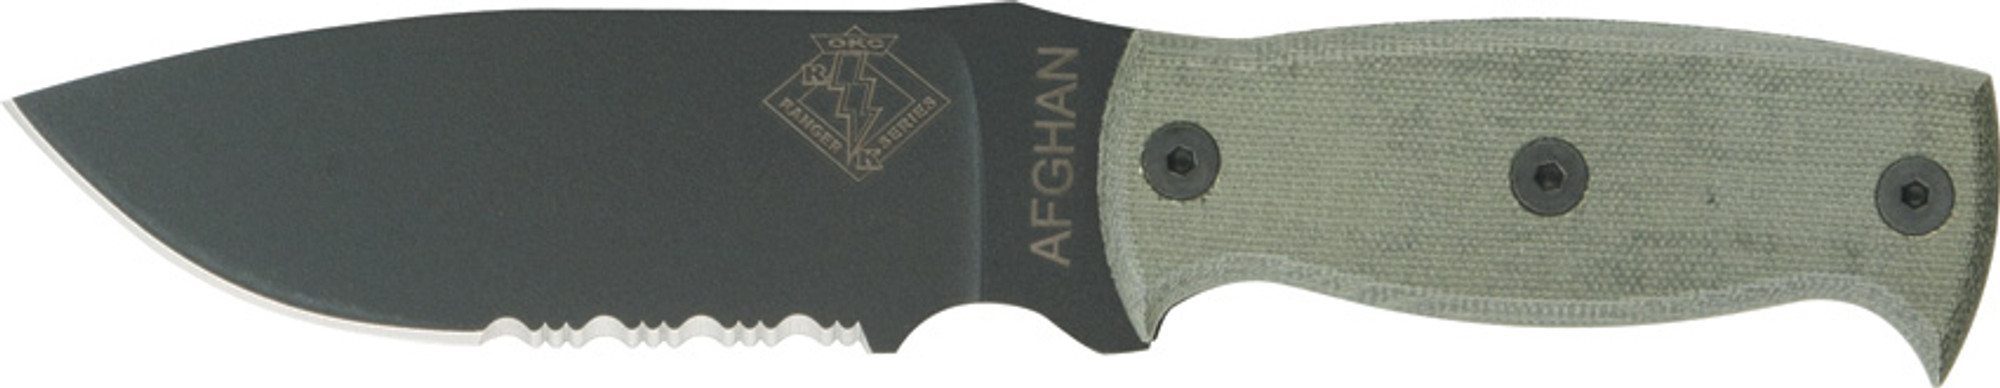 OKC 9419BMS Ranger Series Afghan Knife